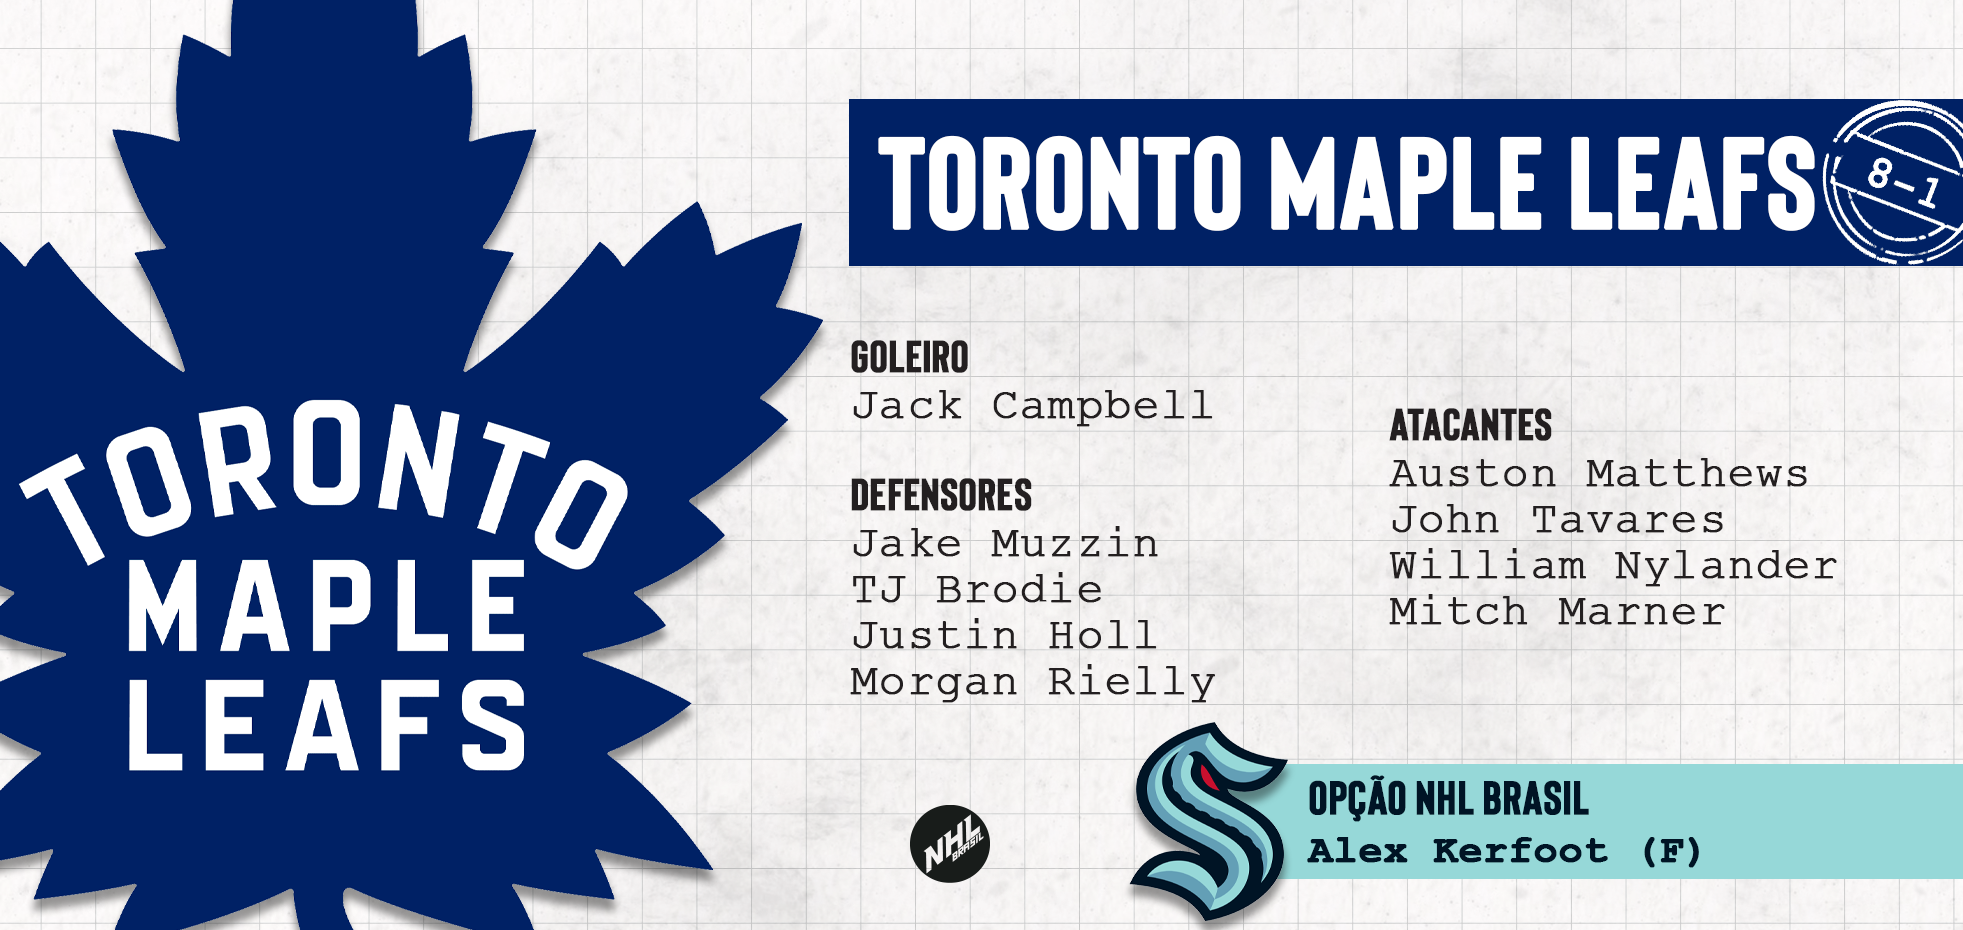 TORONTO MAPLE LEAFS - lista de jogadores protegidos na Divisão Atlântica da NHL